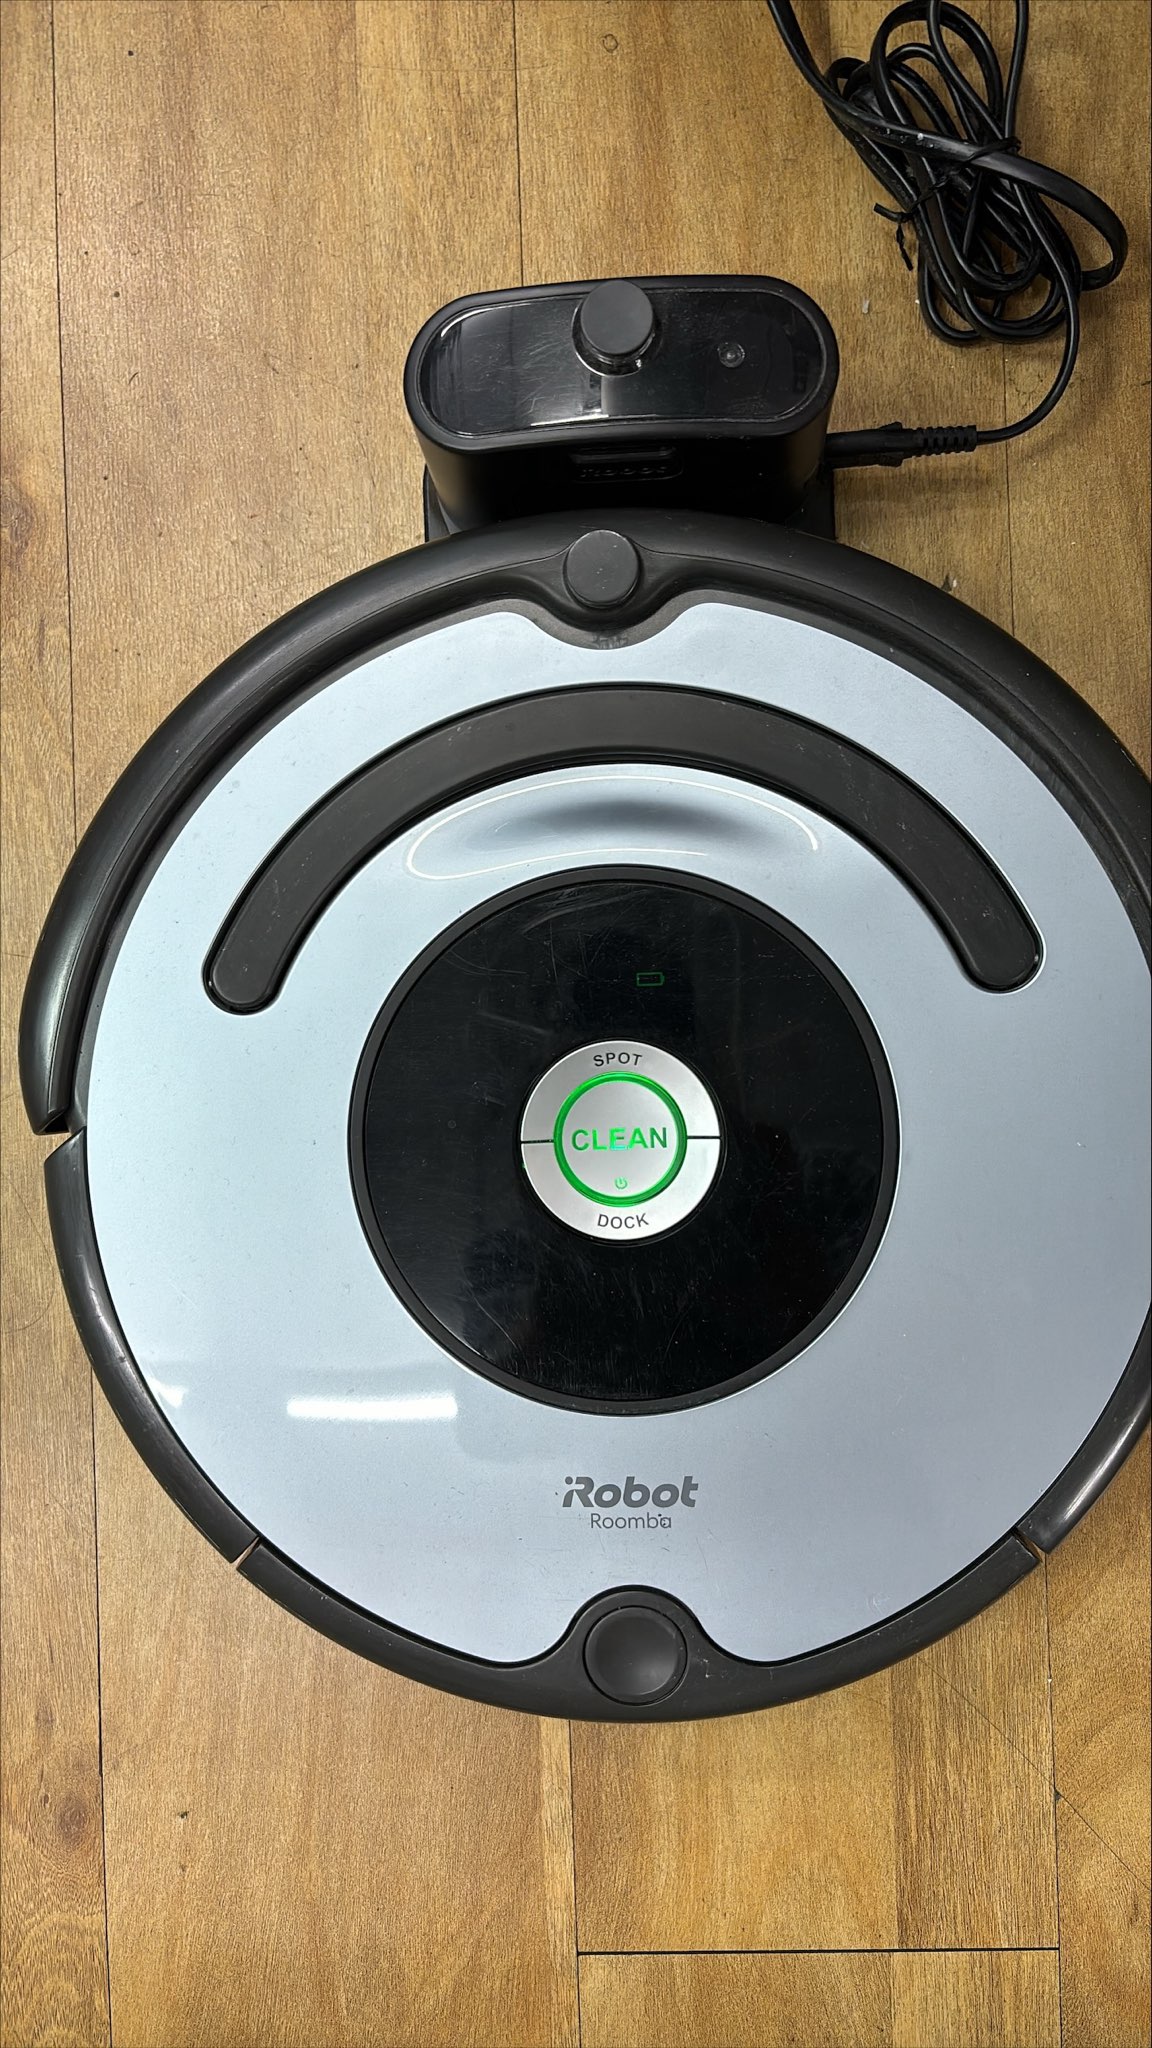 二手掃地機器人保固一年 iRobot Roomba 640 (含基地座)